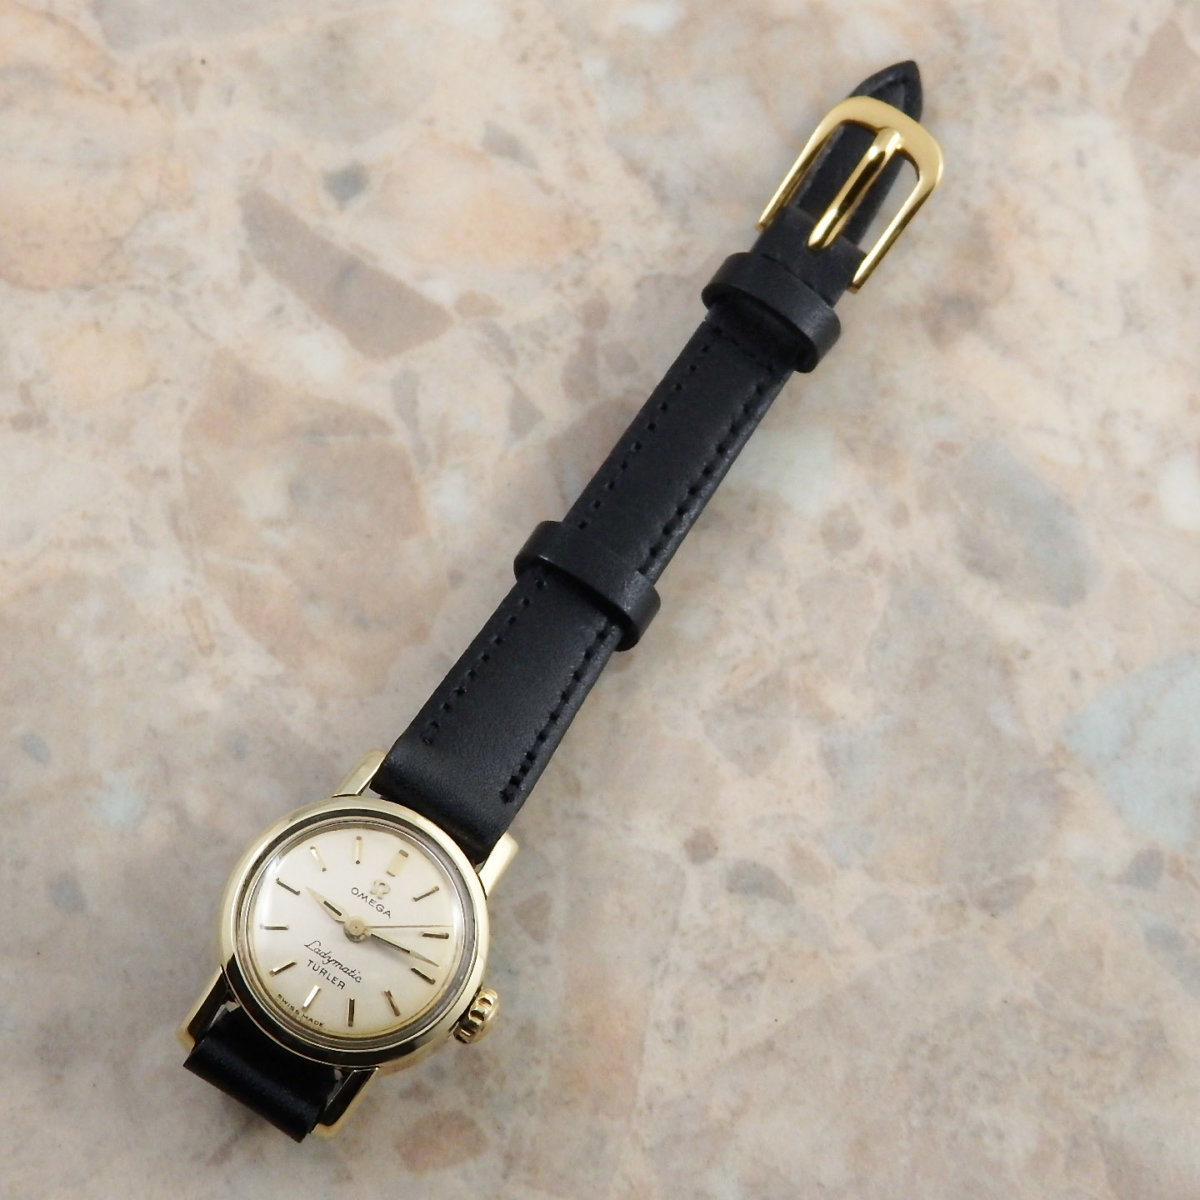 OH済 1956年製 オメガ レディマティック初代モデル Turler Wネーム 腕時計 評判良い